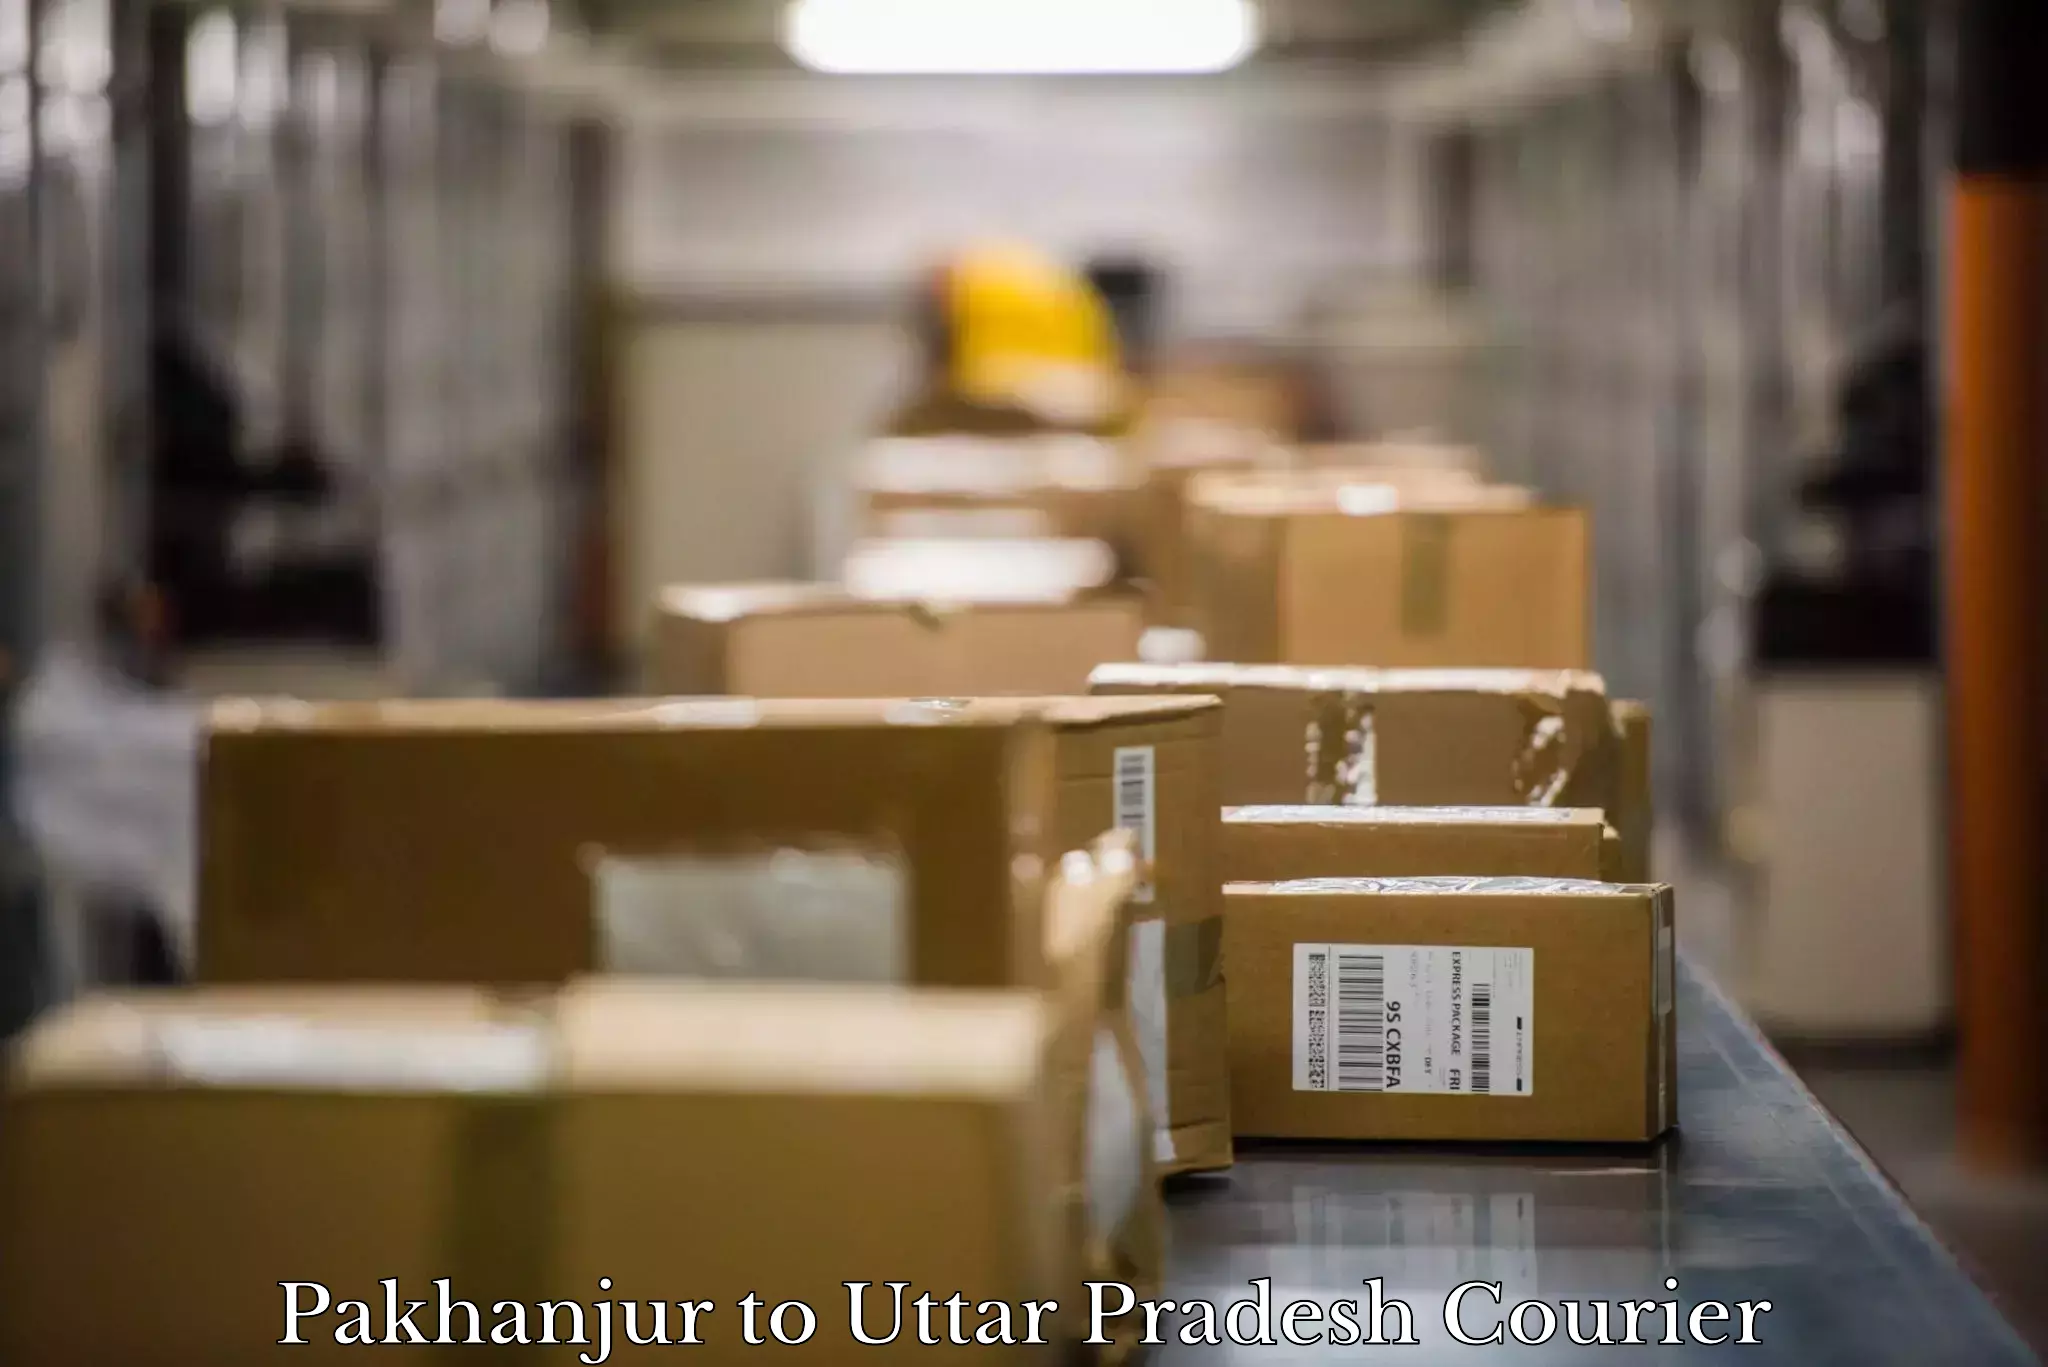 Furniture transport and storage Pakhanjur to Uttar Pradesh